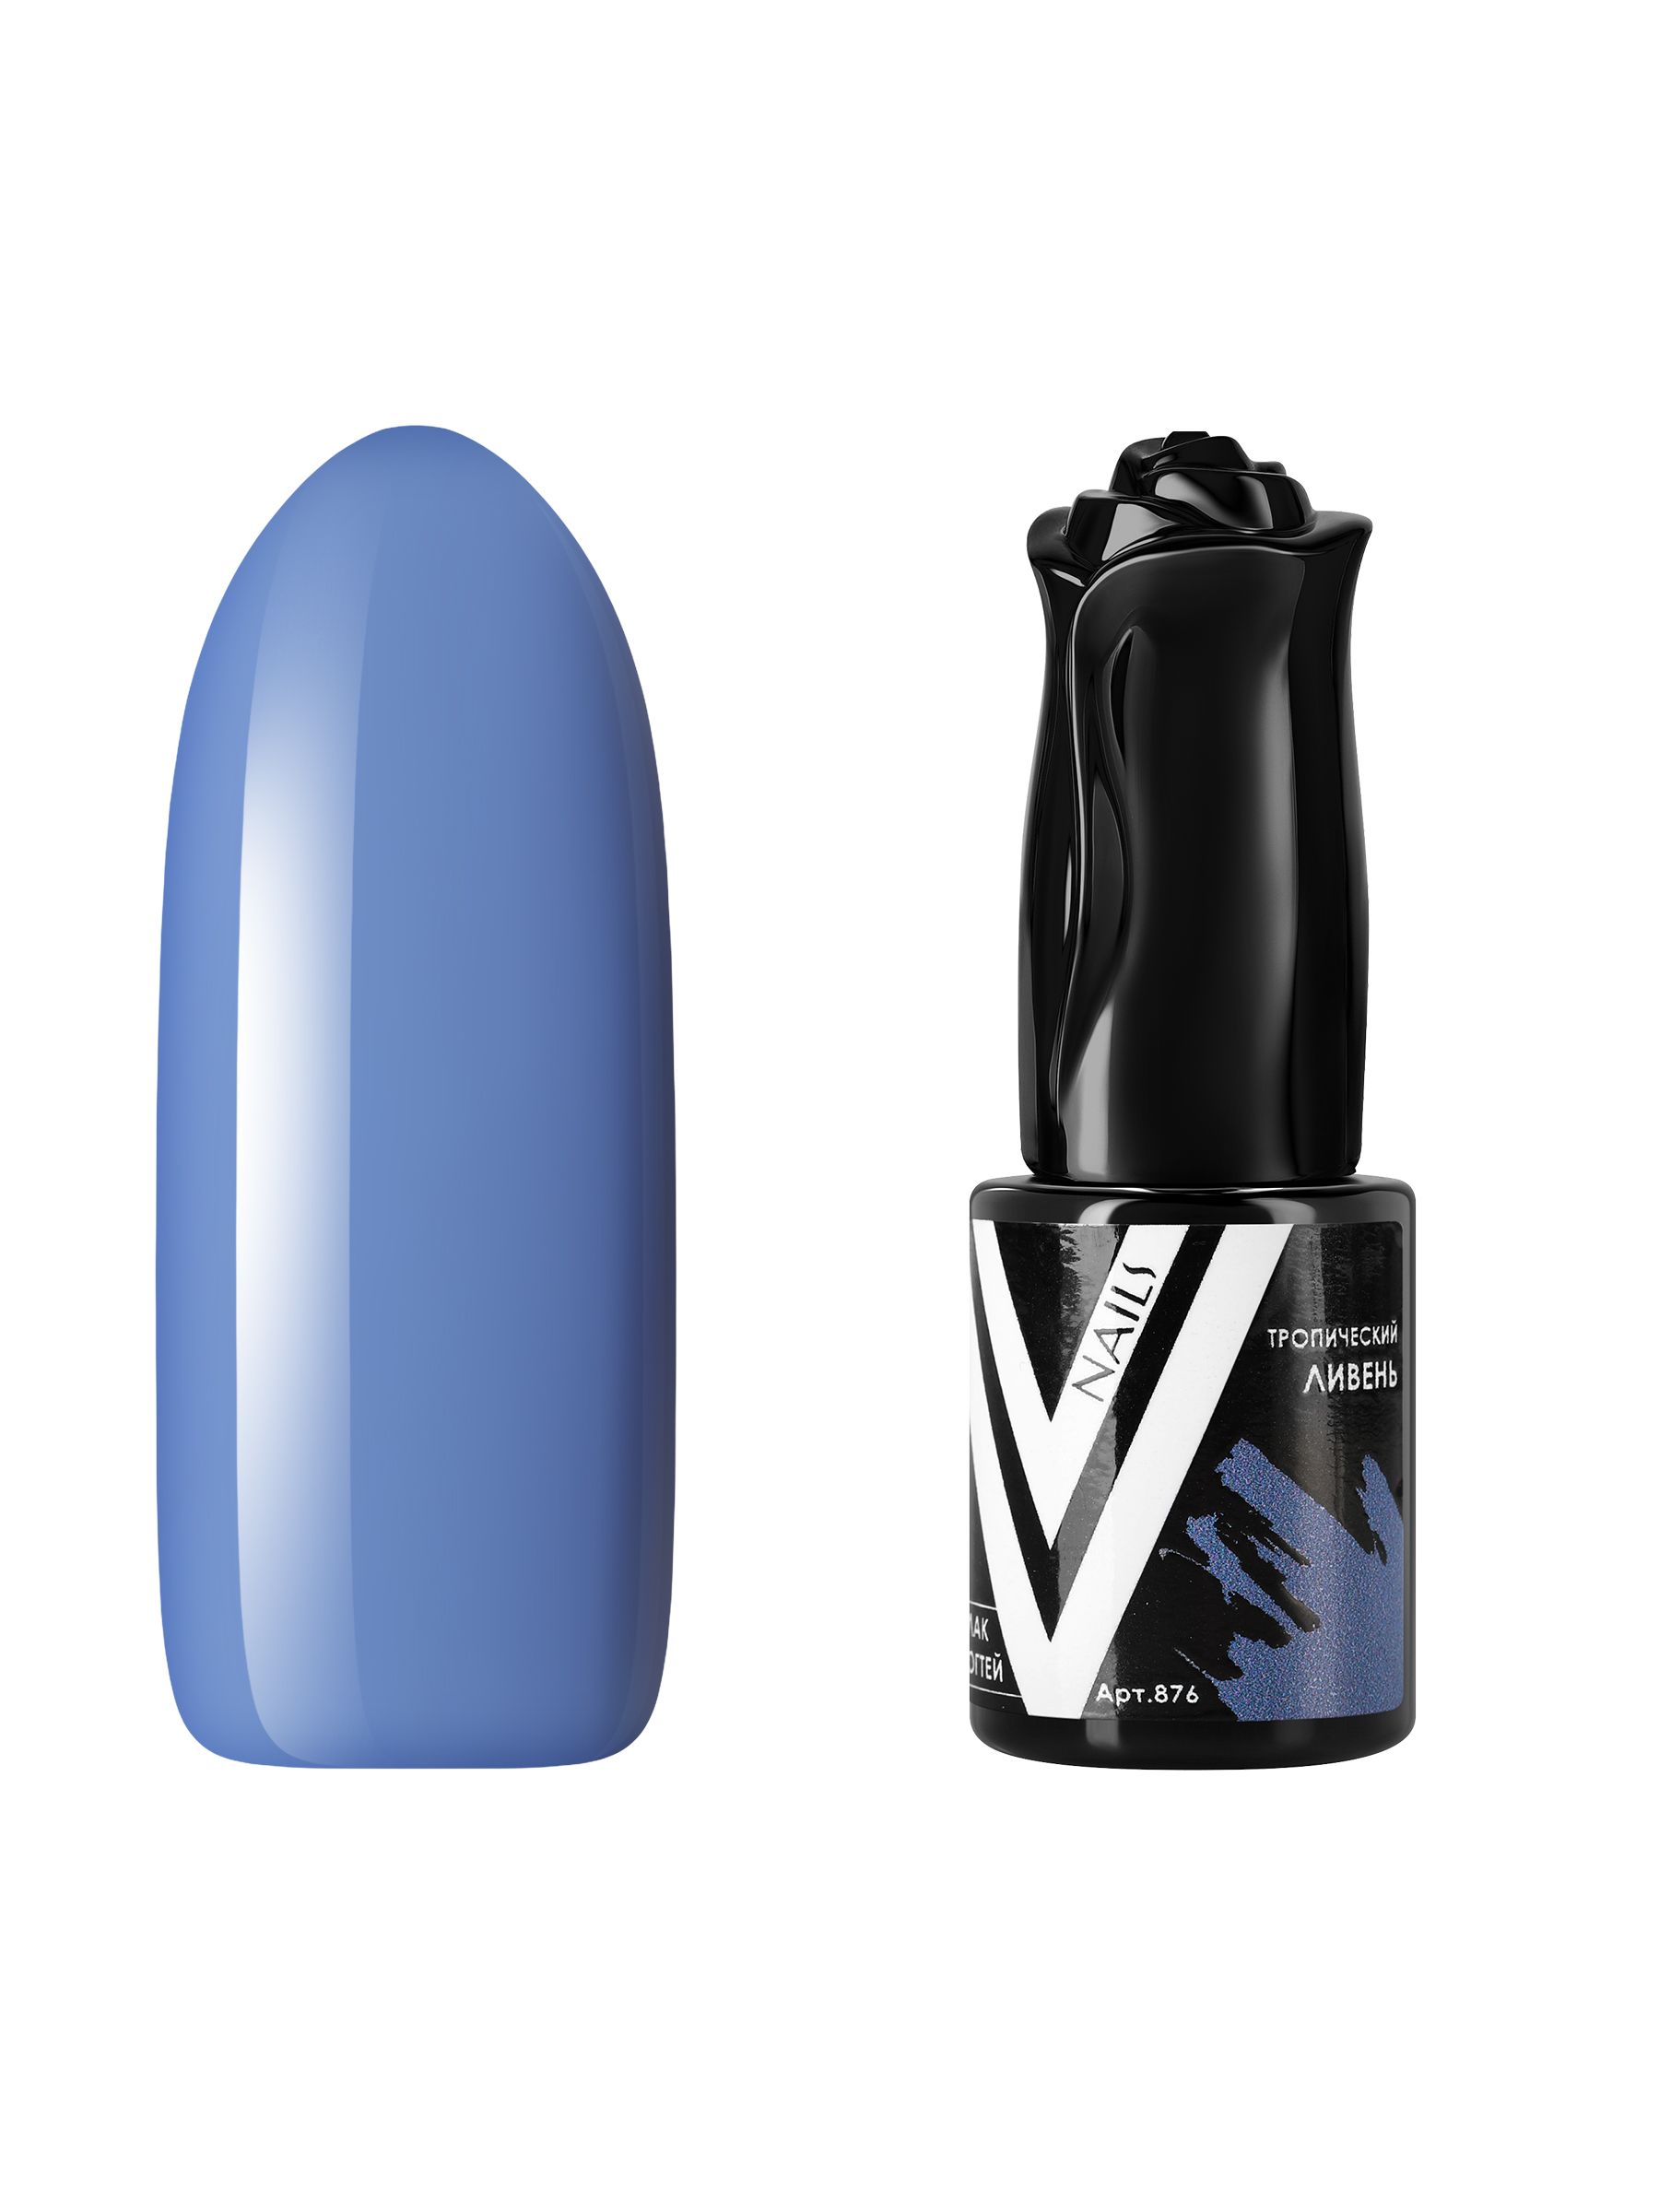 Гель-лак для ногтей Vogue Nails плотный самовыравнивающийся, пыльный синий, 10 мл lazeti профессиональные маникюрные ножницы для ногтей лезвие 22 мм с ручной заточкой модель 511